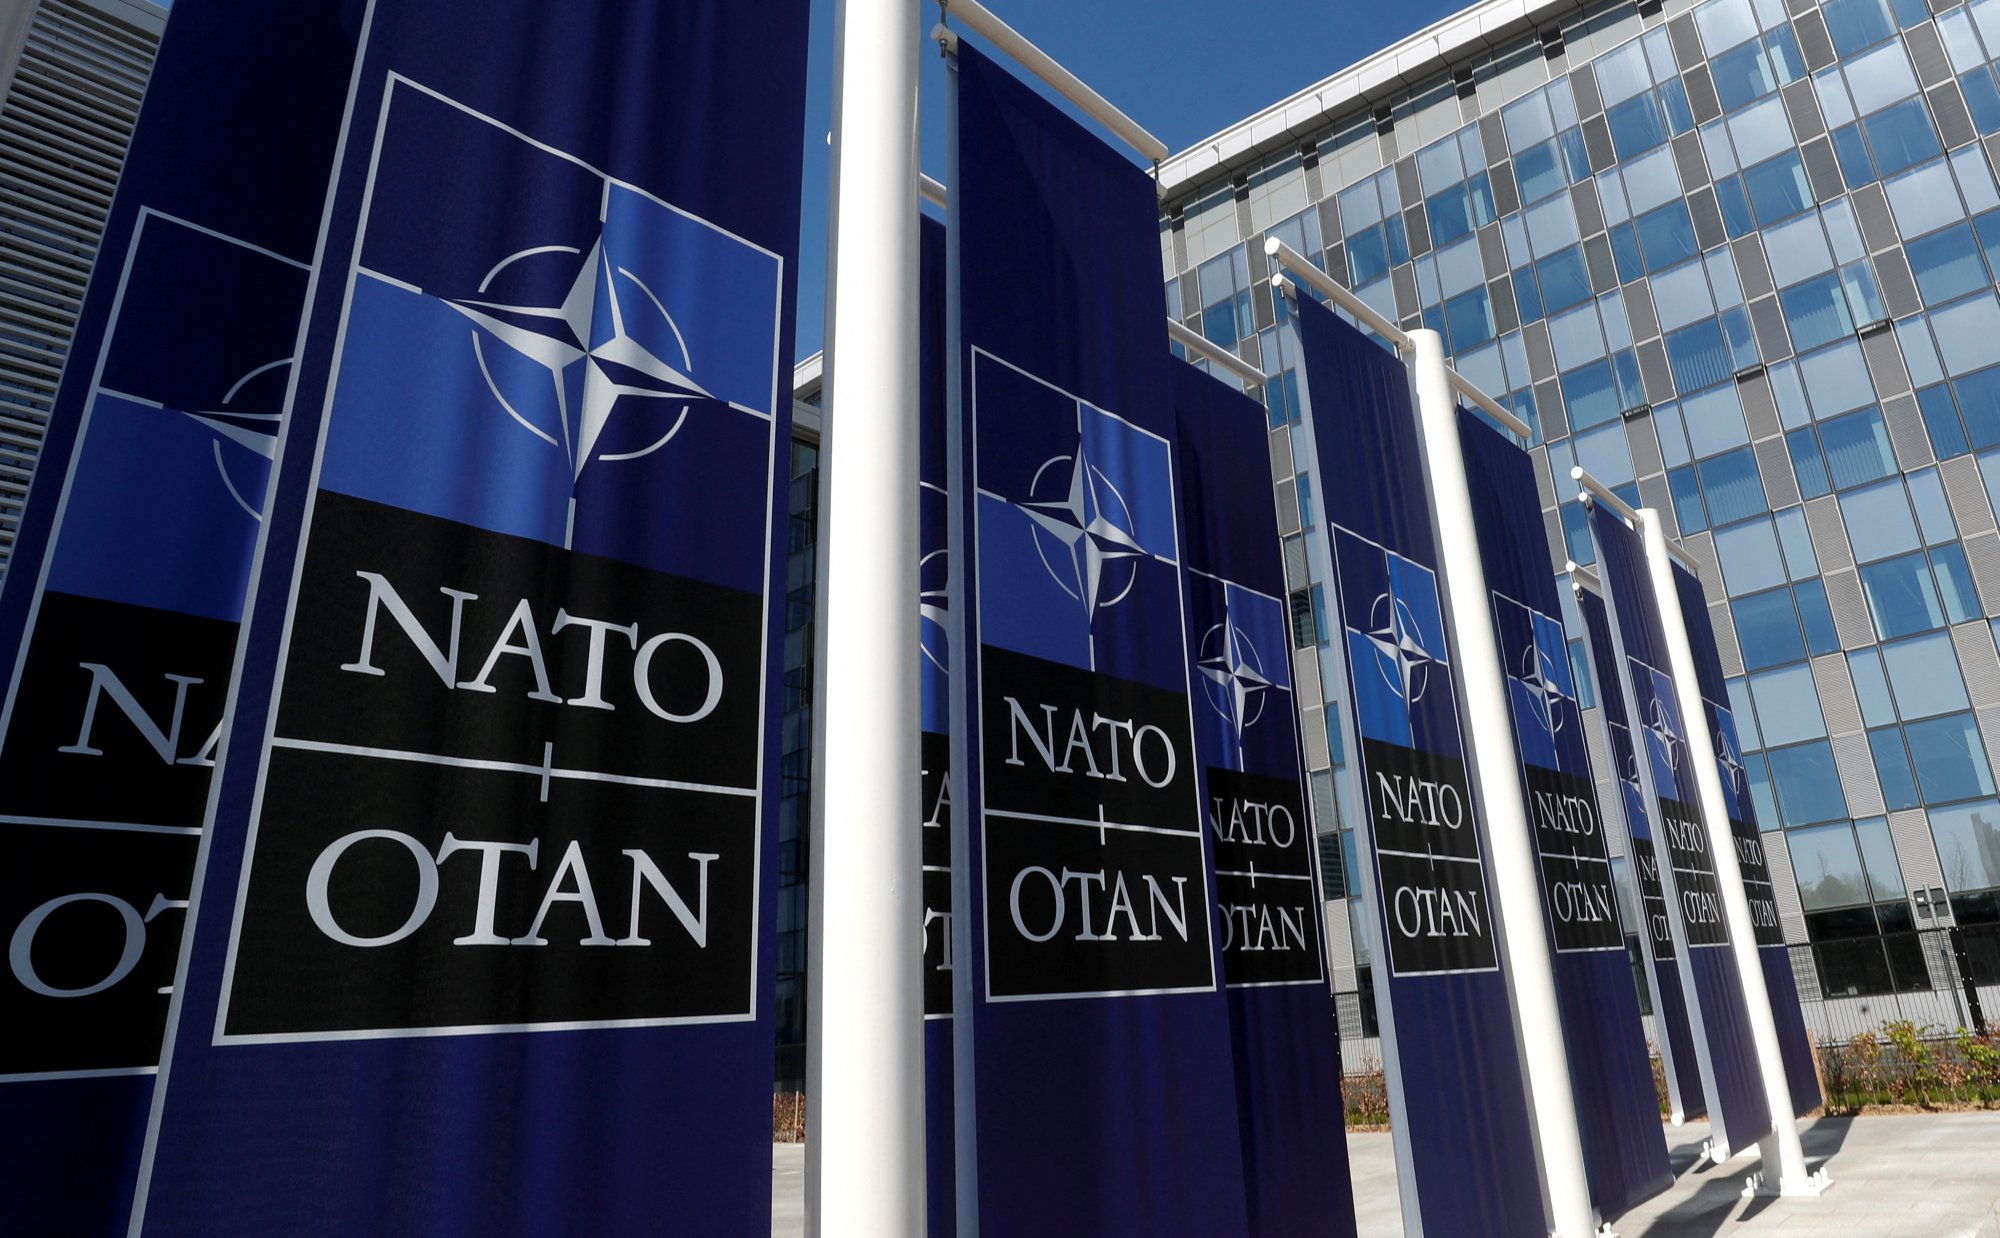 Πολωνία: Το ΝΑΤΟ εξετάζει το ενδεχόμενο κατάρριψης ρωσικών πυραύλων αν πλησιάζουν κράτη-μέλη του